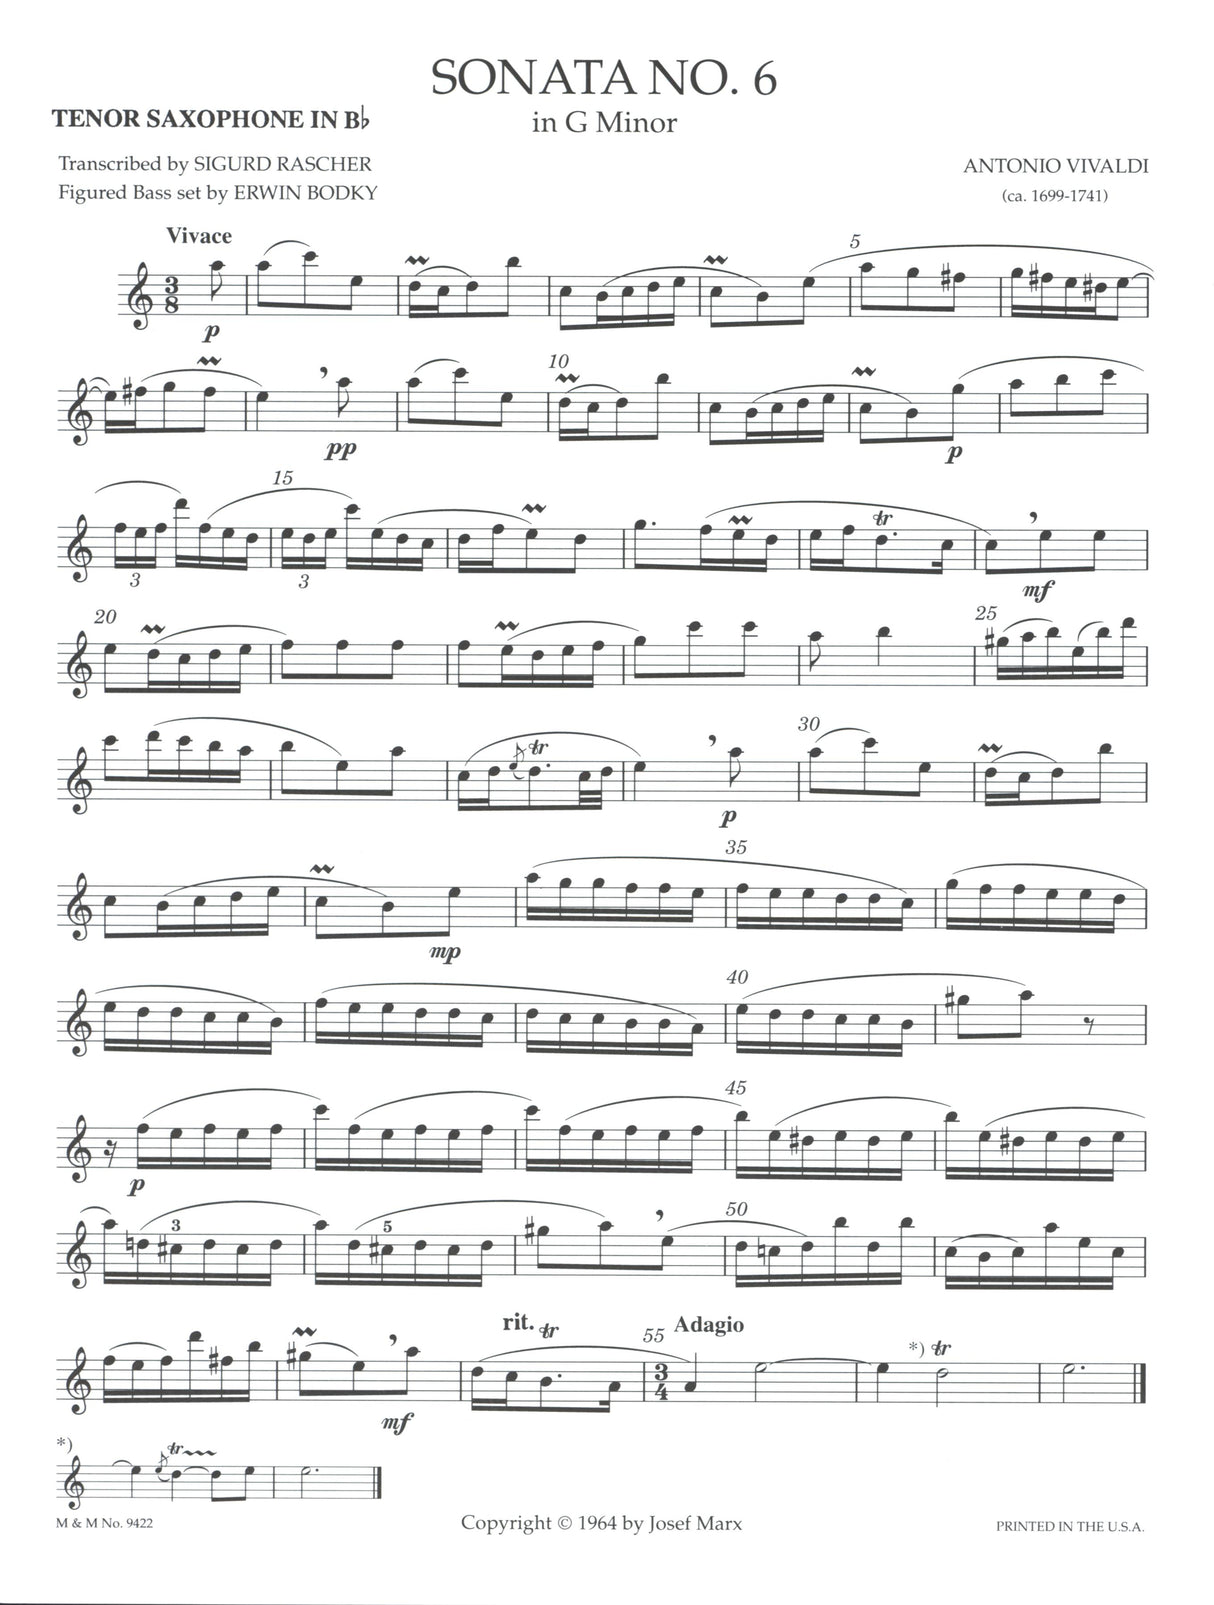 Vivaldi: Sonata in G Minor (arr. for tenor sax)